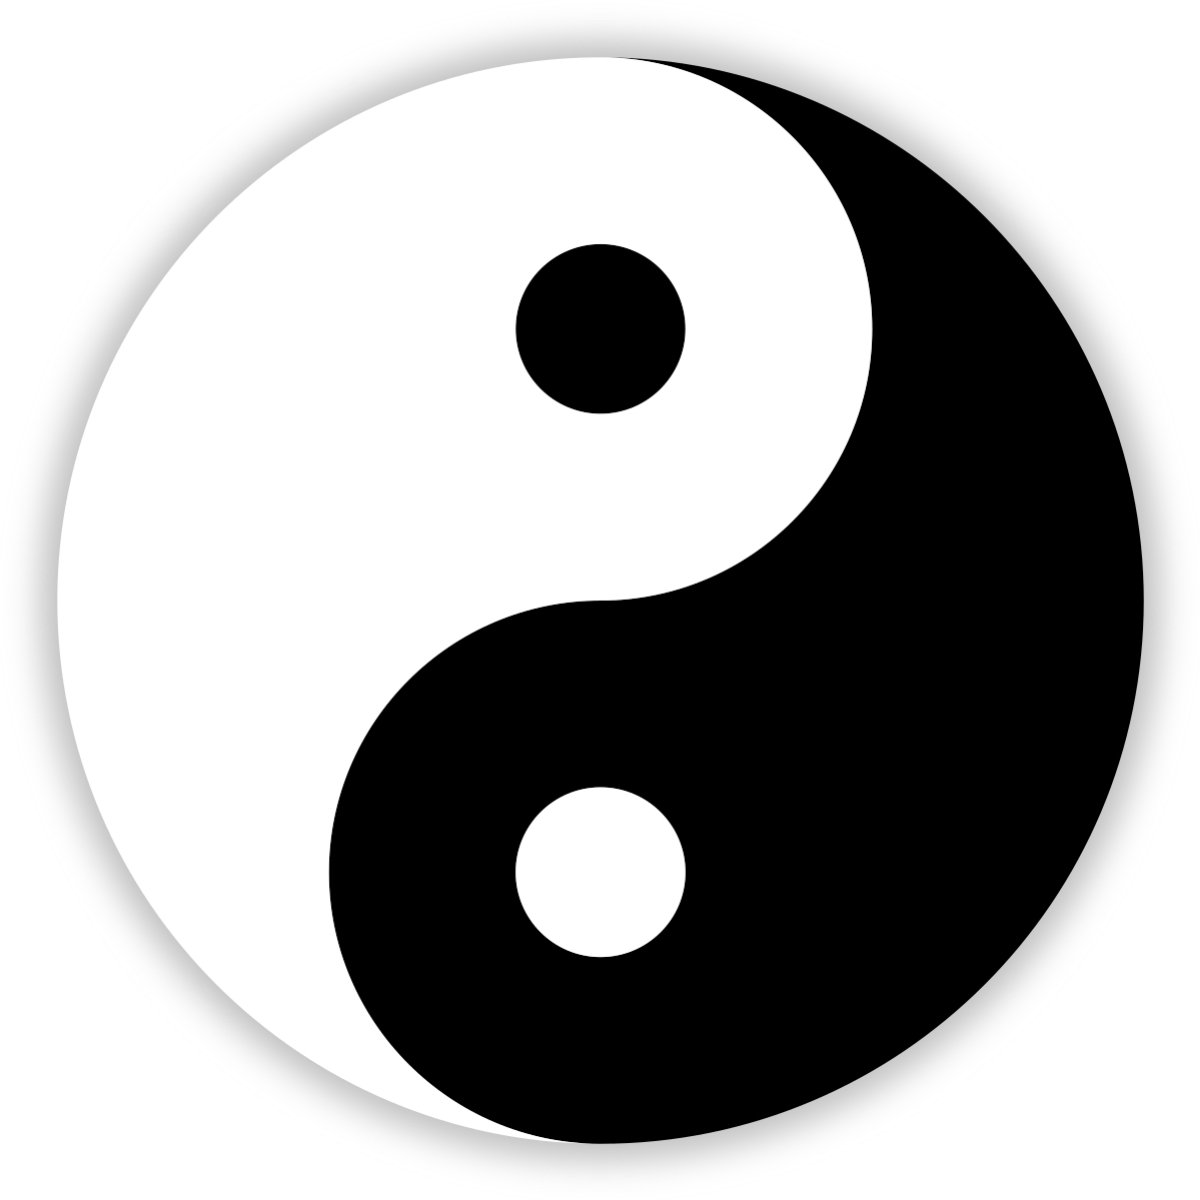 yin yang sope☯︎ - a thread